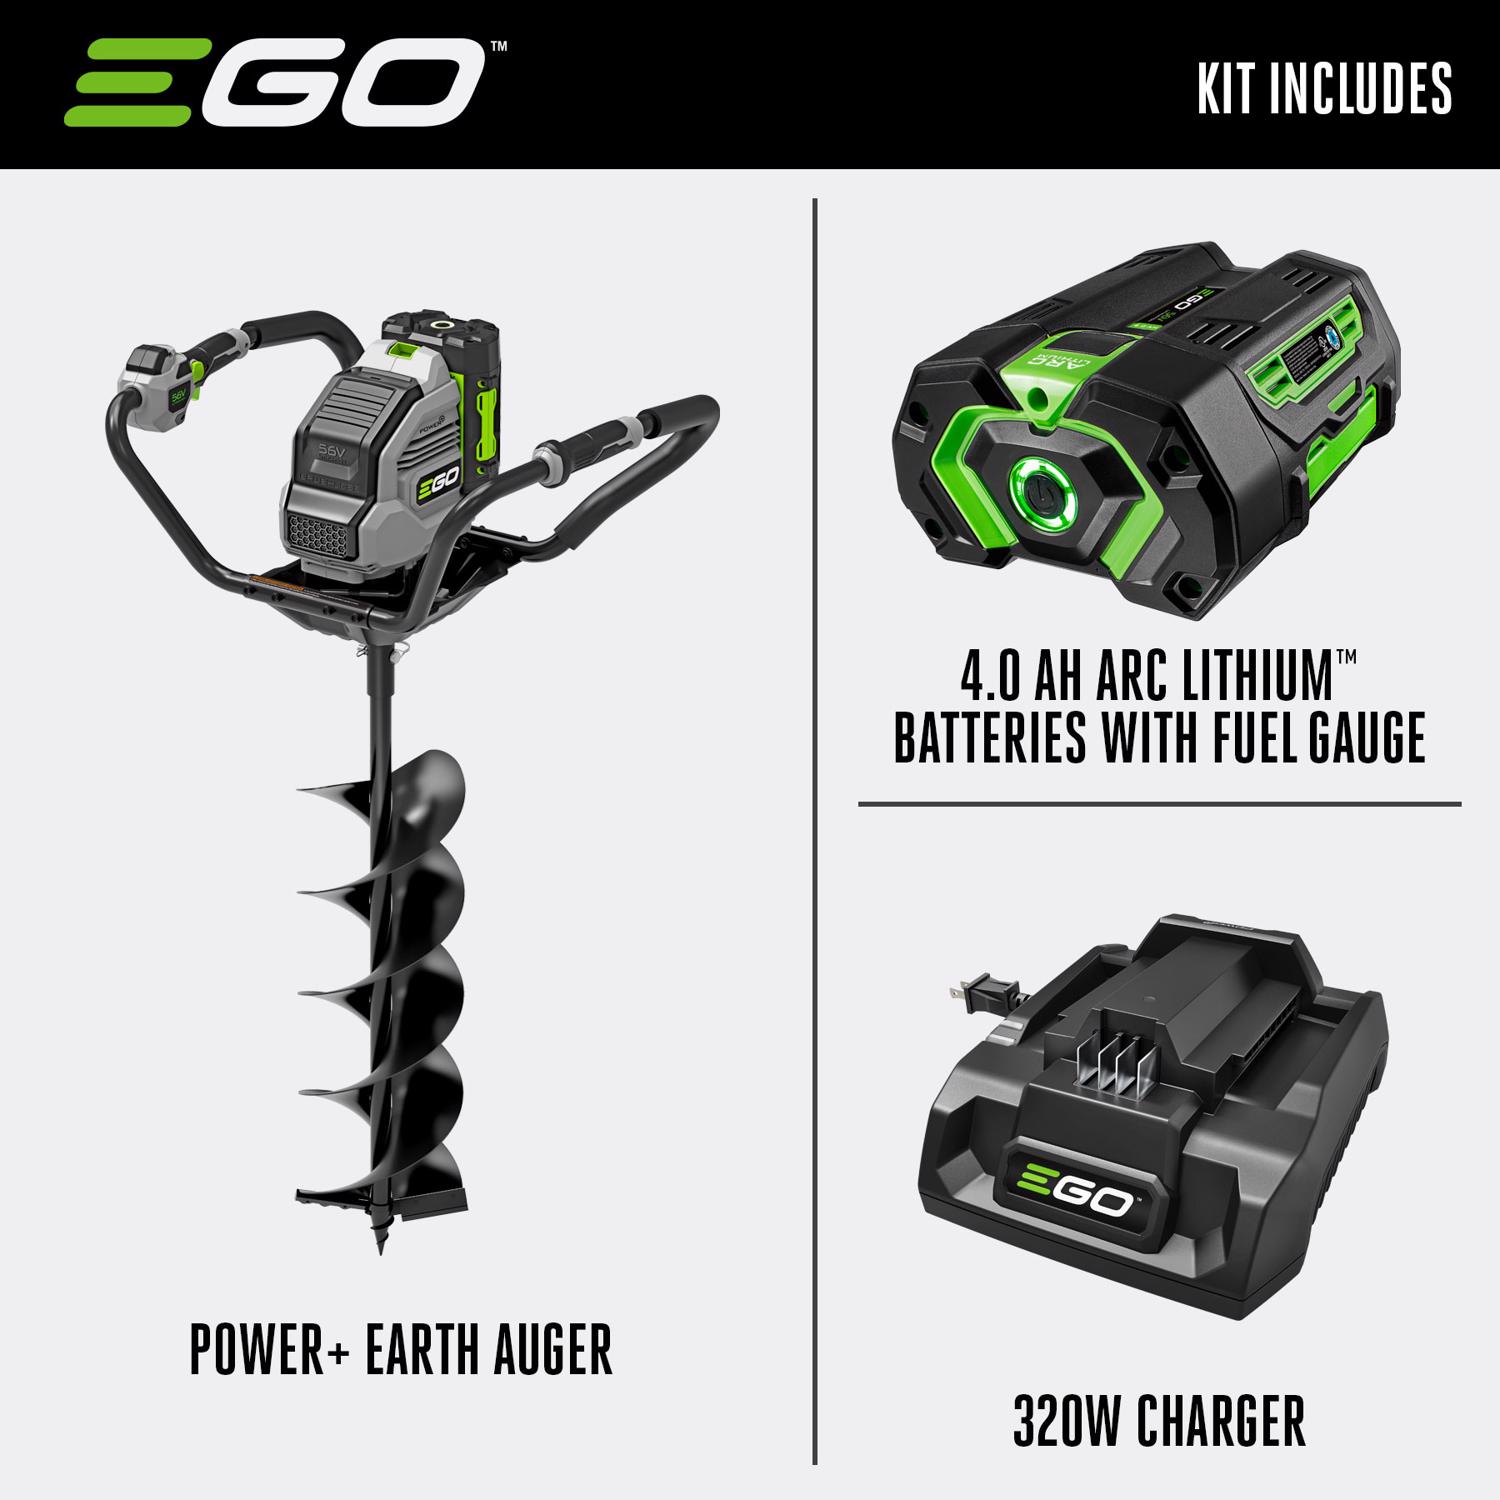 EGO Power+ EG0803 32 in. Earth Auger 56V KIT W/ 5.0AH BATTERY - Ace Hardware